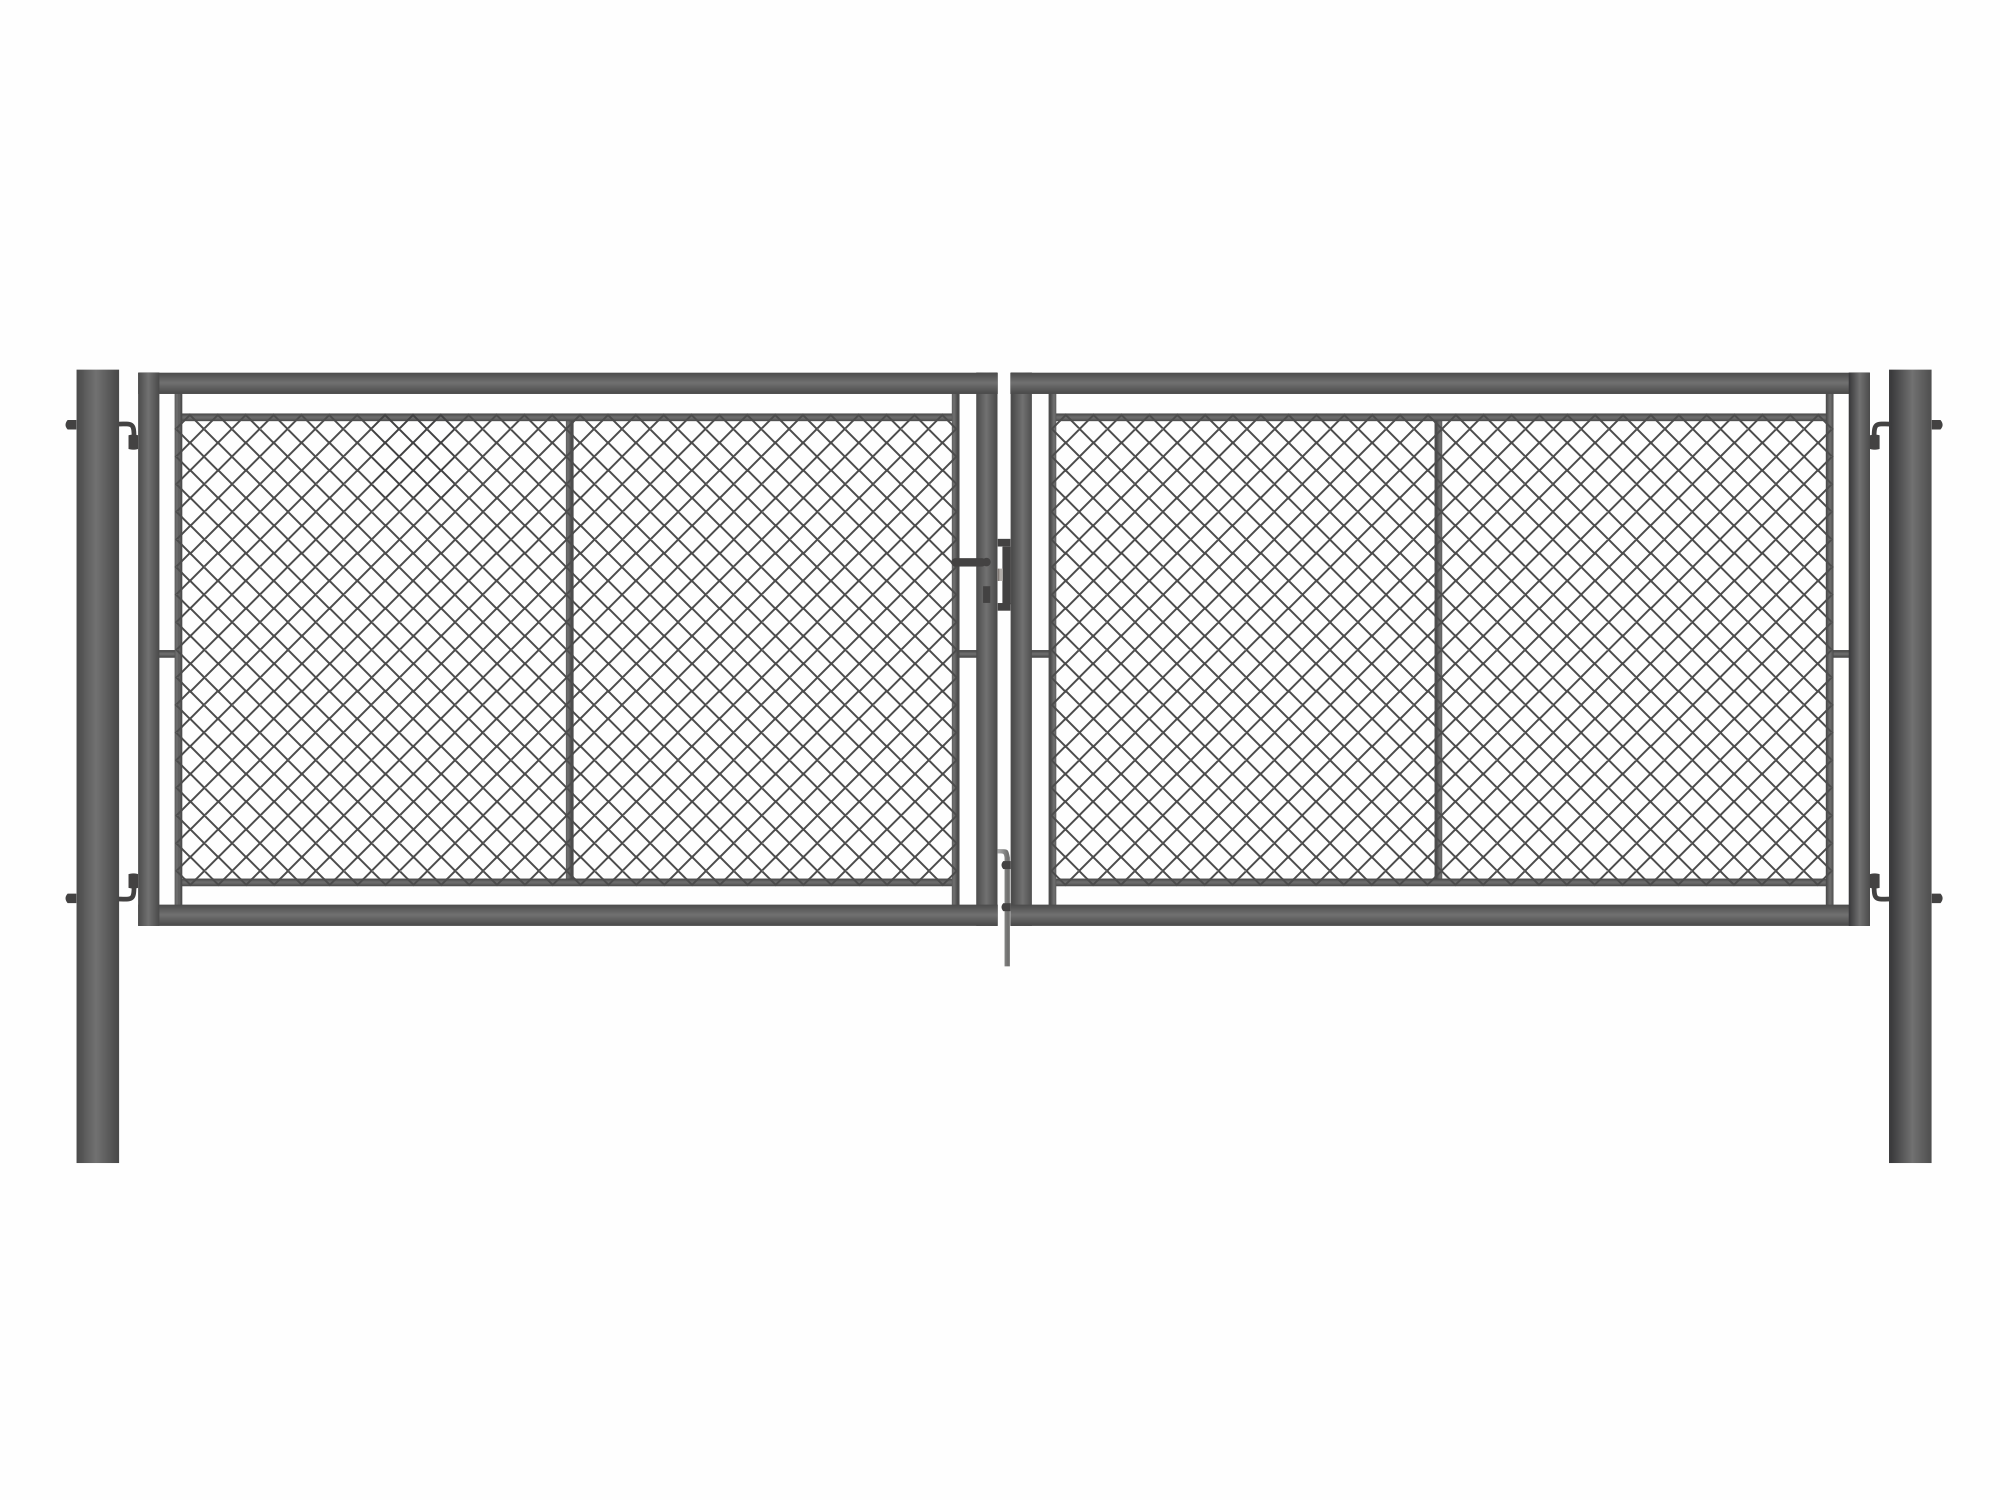 Brána zahradní dvoukřídlá antracit, výška 195 x 500 cm, FAB, s výplní klasického pletiva PLOTY Sklad5 9896 535